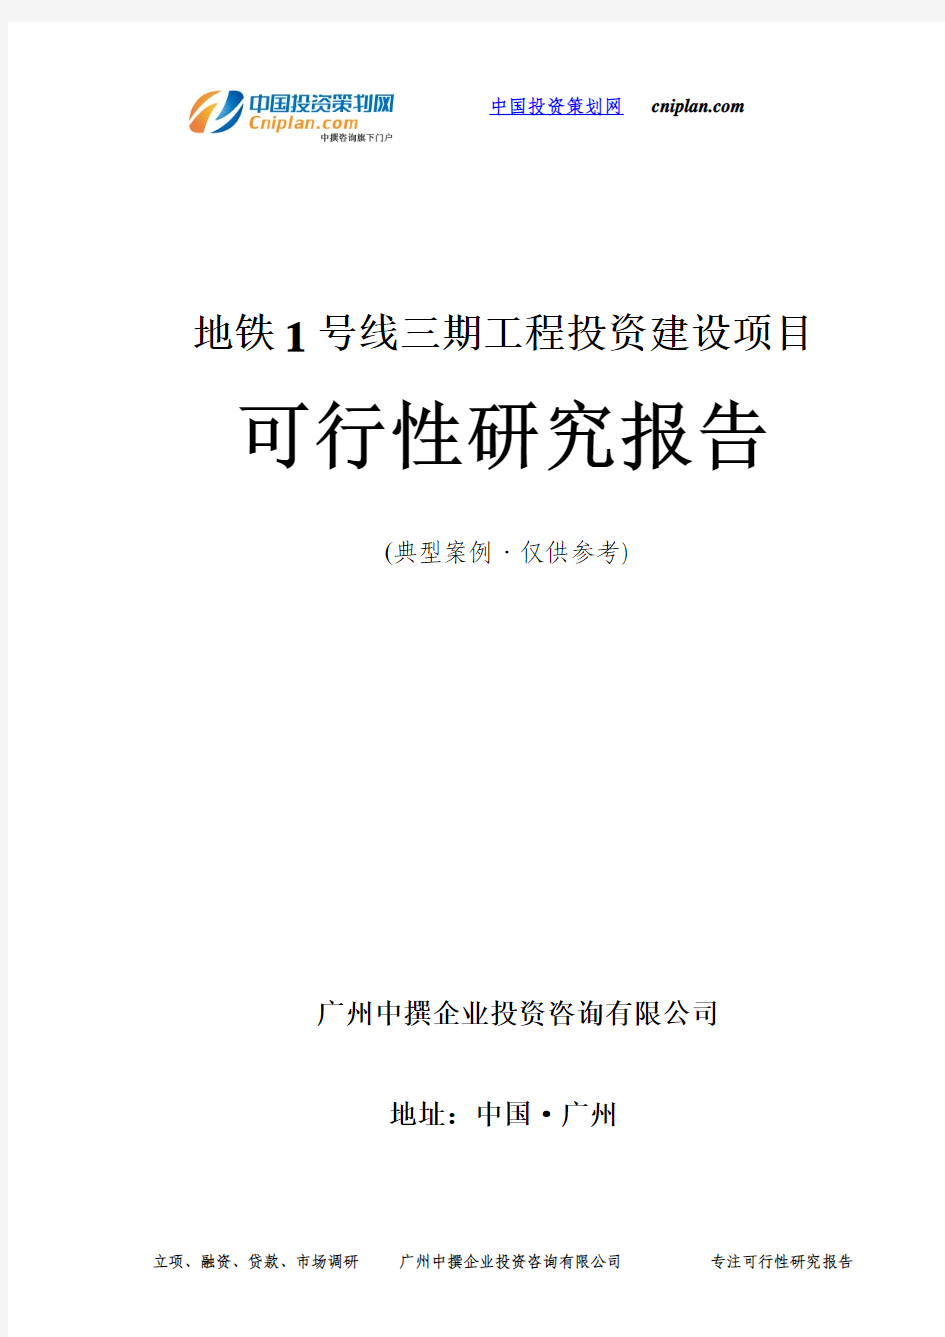 地铁1号线三期工程投资建设项目可行性研究报告-广州中撰咨询